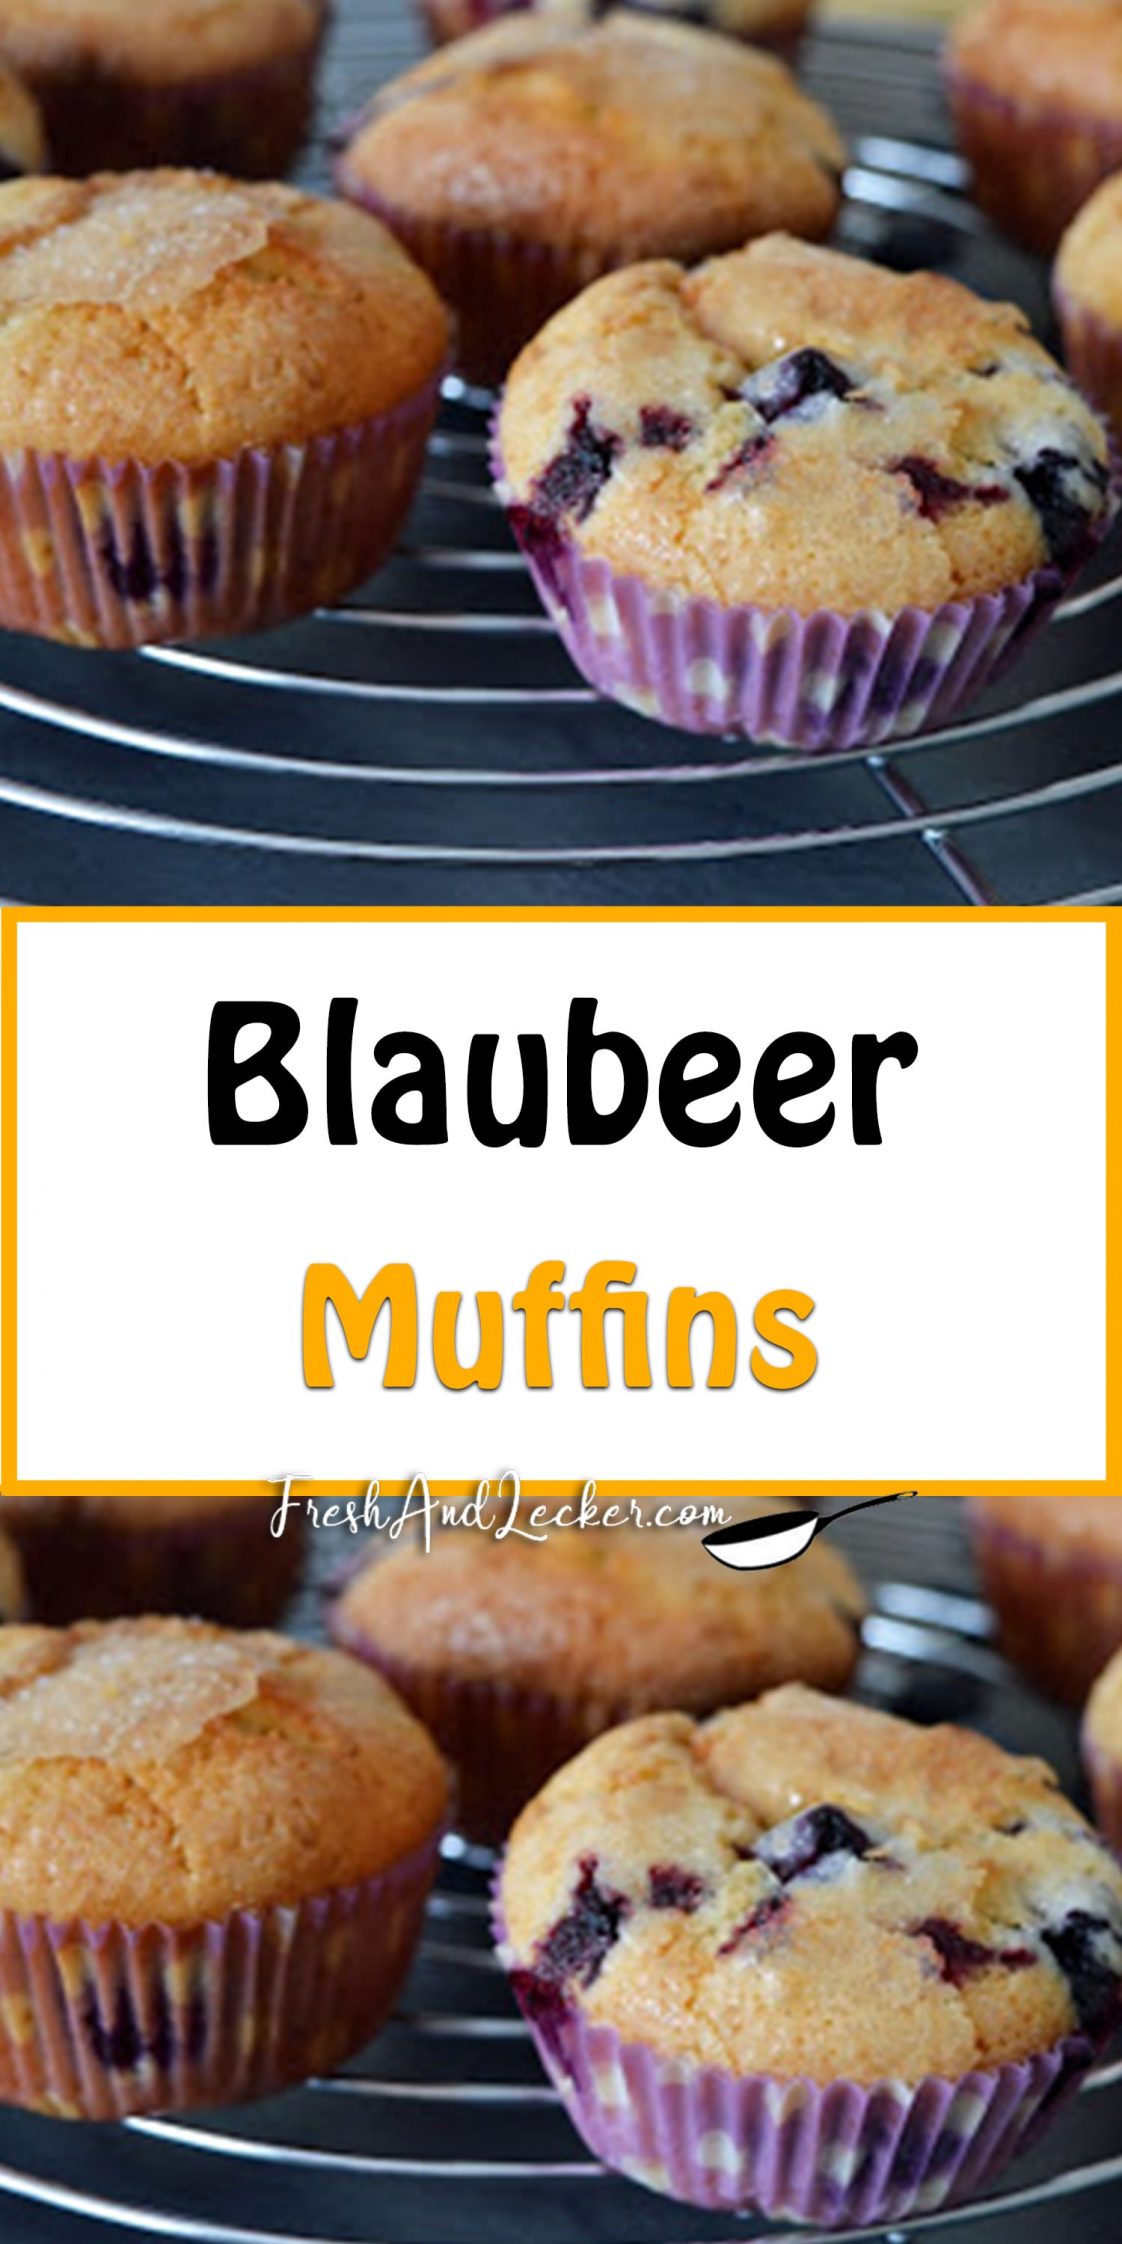 Blaubeer Muffins - Fresh Lecker